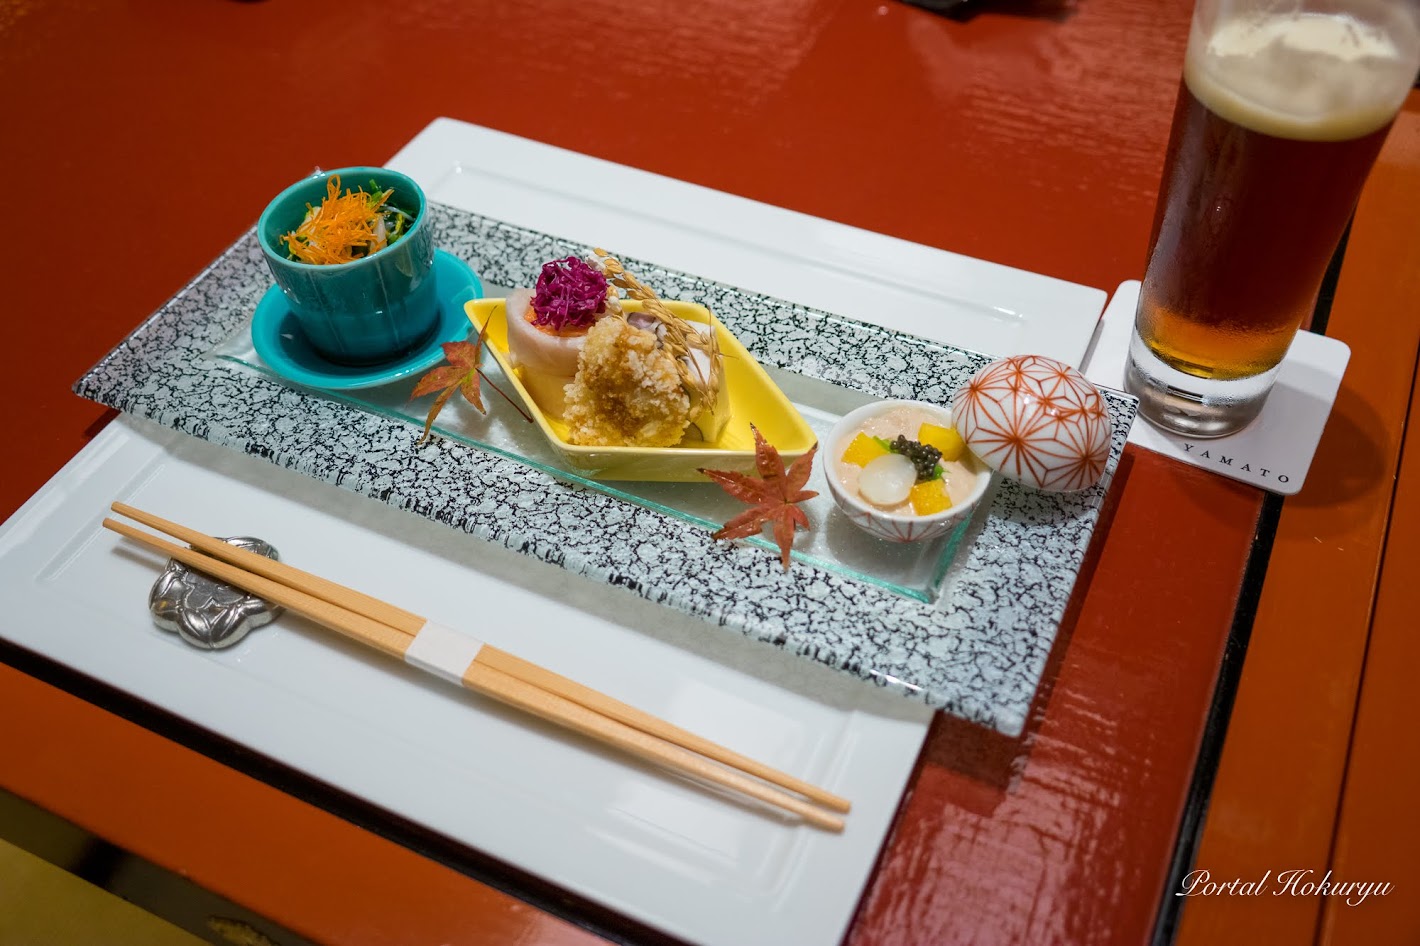 旬菜：汲み上げ湯葉の胡桃和え、サーモンと蕪のお寿司、むかご真蒸、むつの揚げ物、菊と菊菜のお浸し